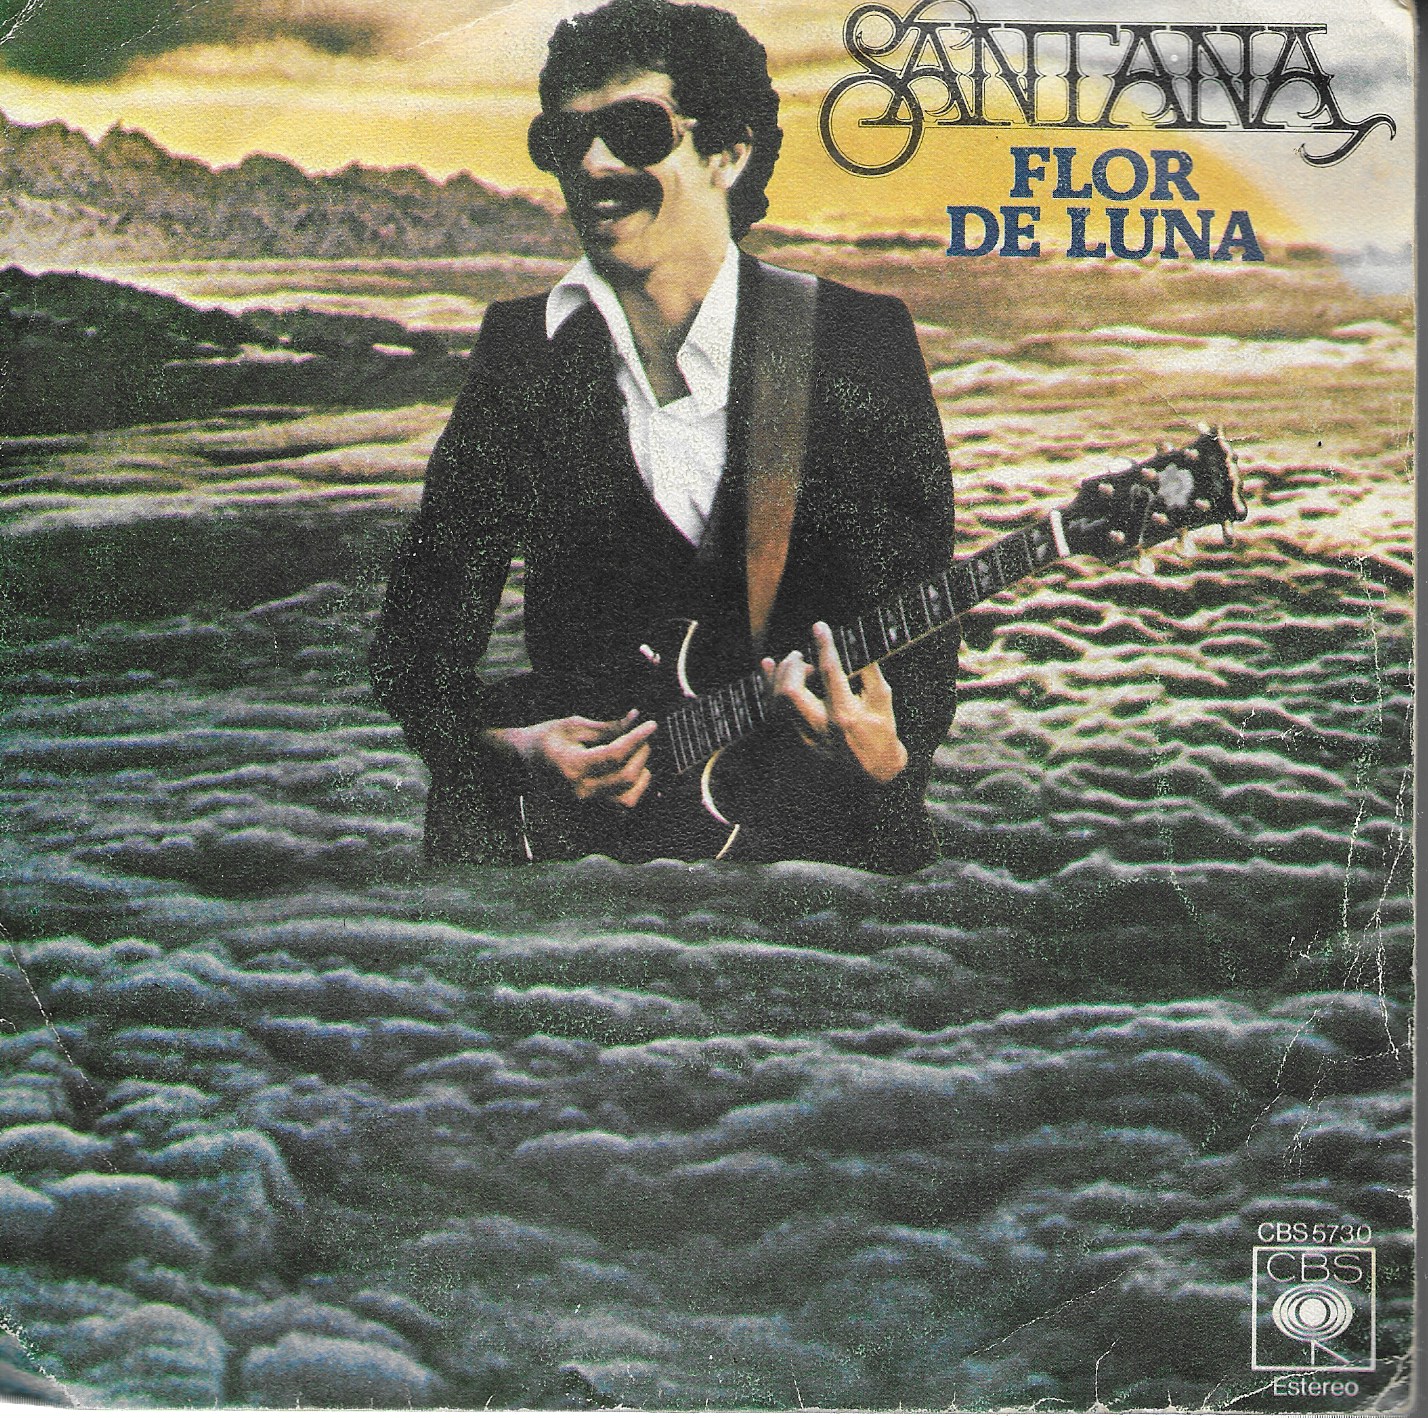 Santana. CBS 1978. 45RPM SP 2 títulos: Flor de luna/Transcendance